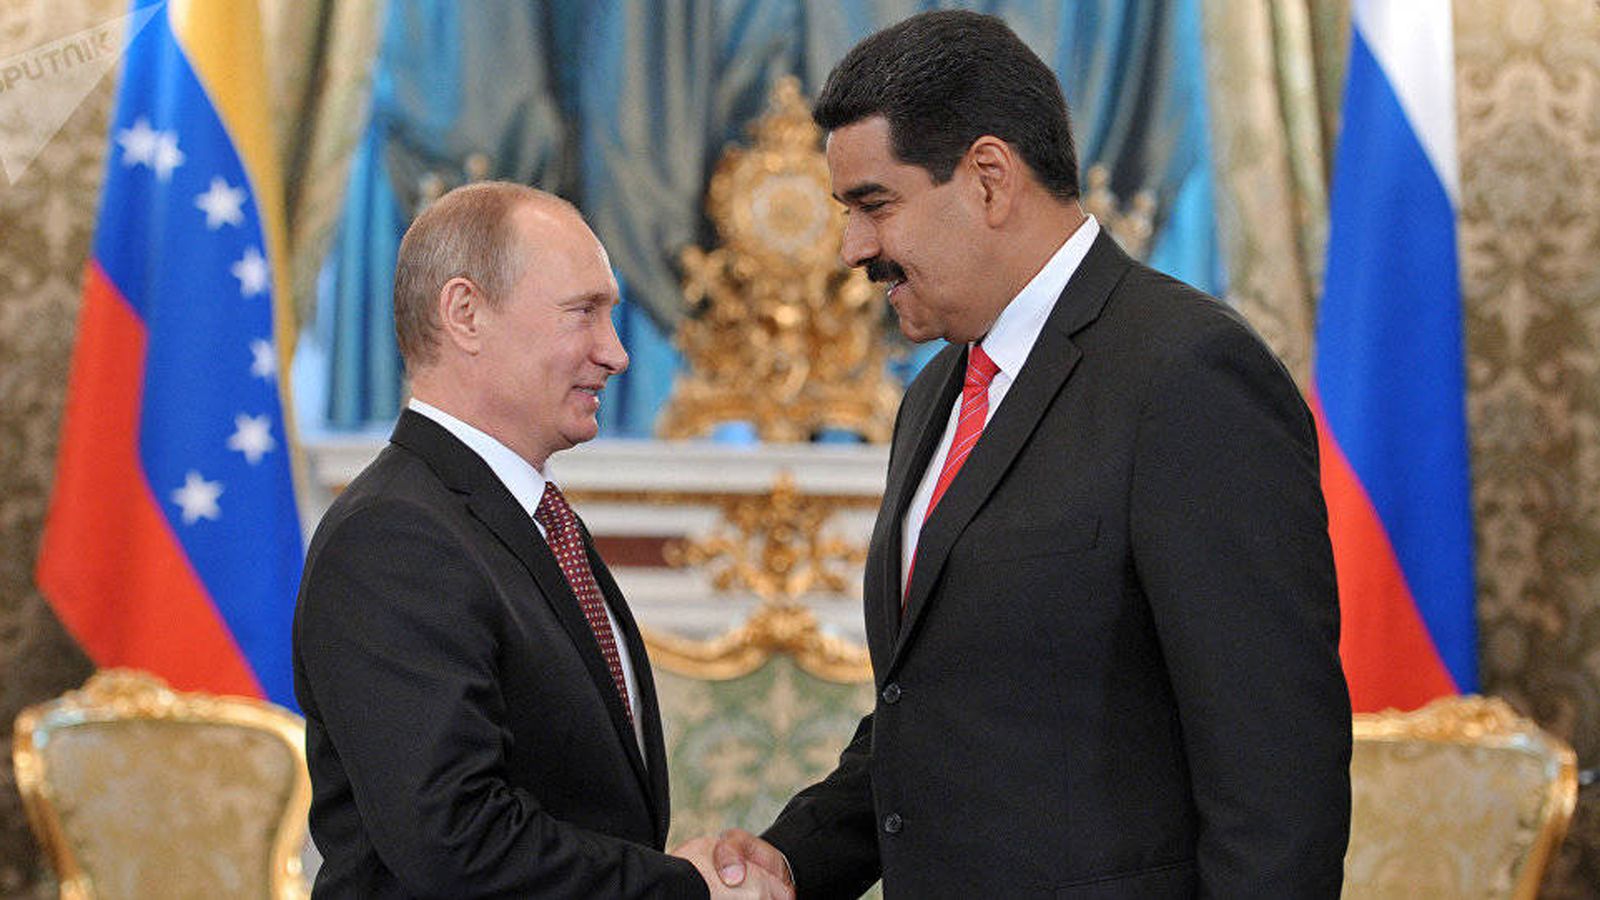 Nicolás Maduro en Twitter: "En nom del pueblo venezolano felicitaciones al presidente Vladimir Putin por la contundente victoria del Partido Rusia Unida en las elecciones Regionales y Municipales del pasado fin de